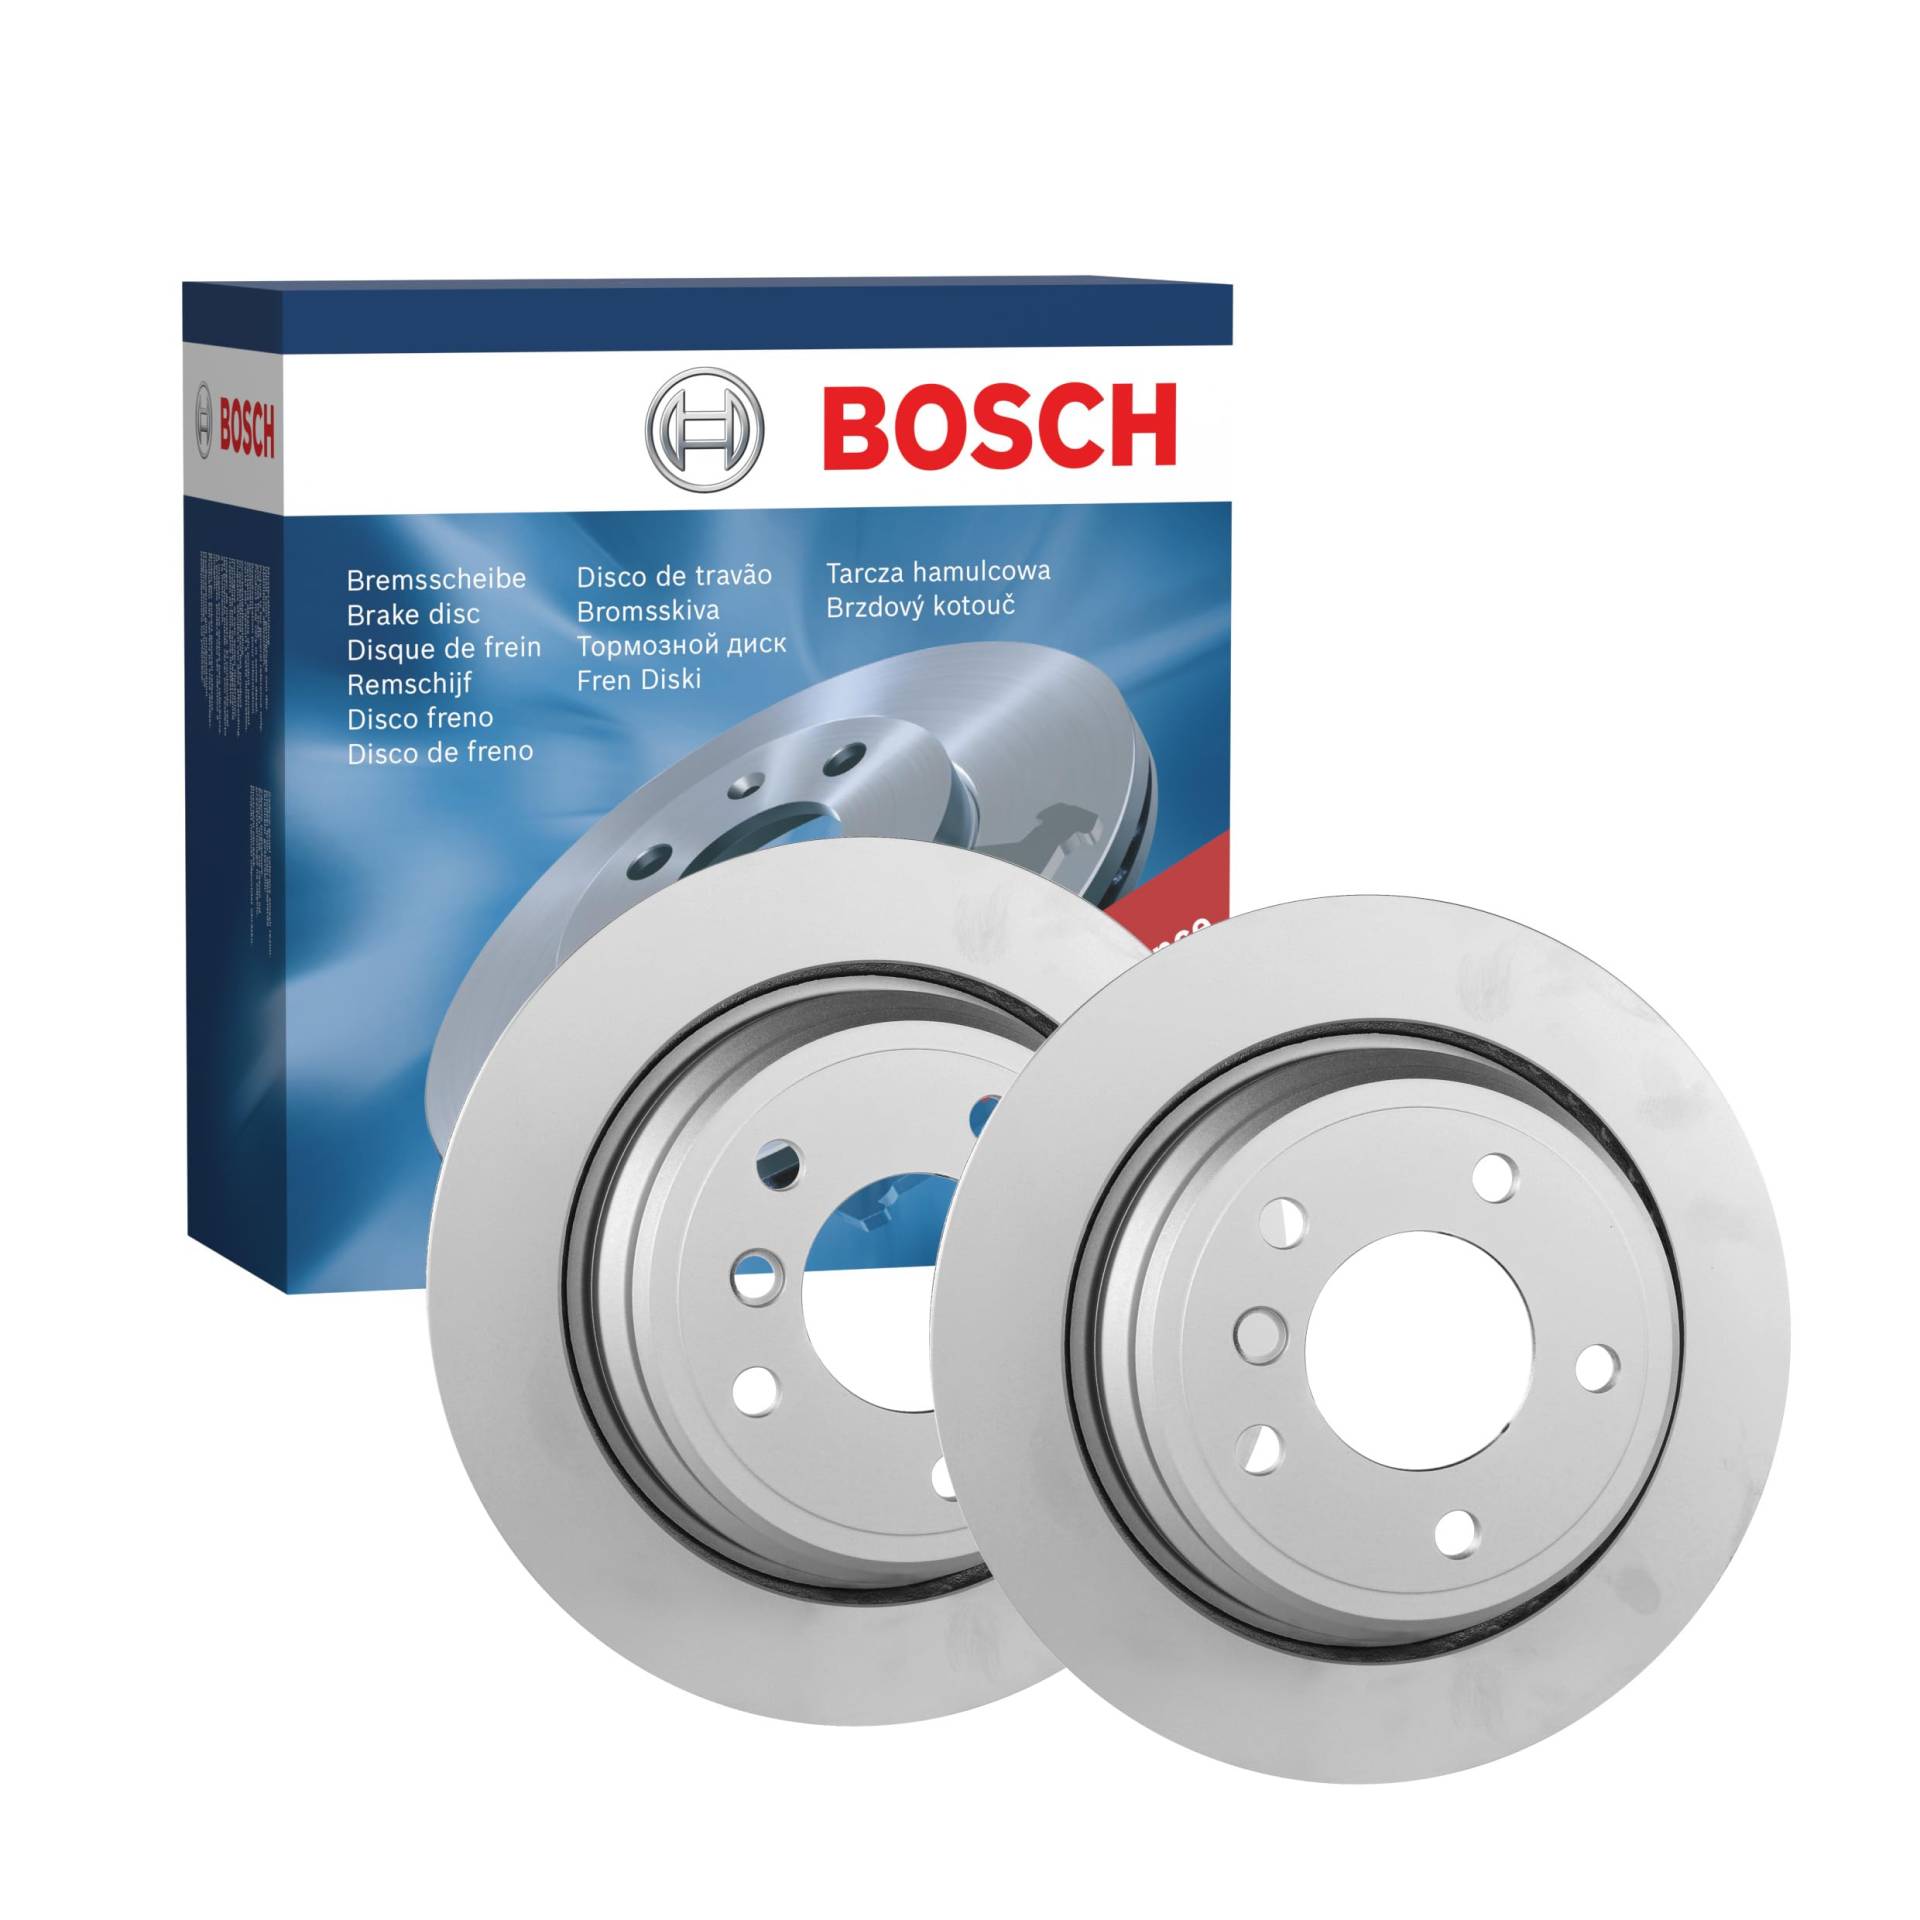 Bosch BD357 Bremsscheiben - Hinterachse - ECE-R90 Zertifizierung - zwei Bremsscheiben pro Set von Bosch Automotive